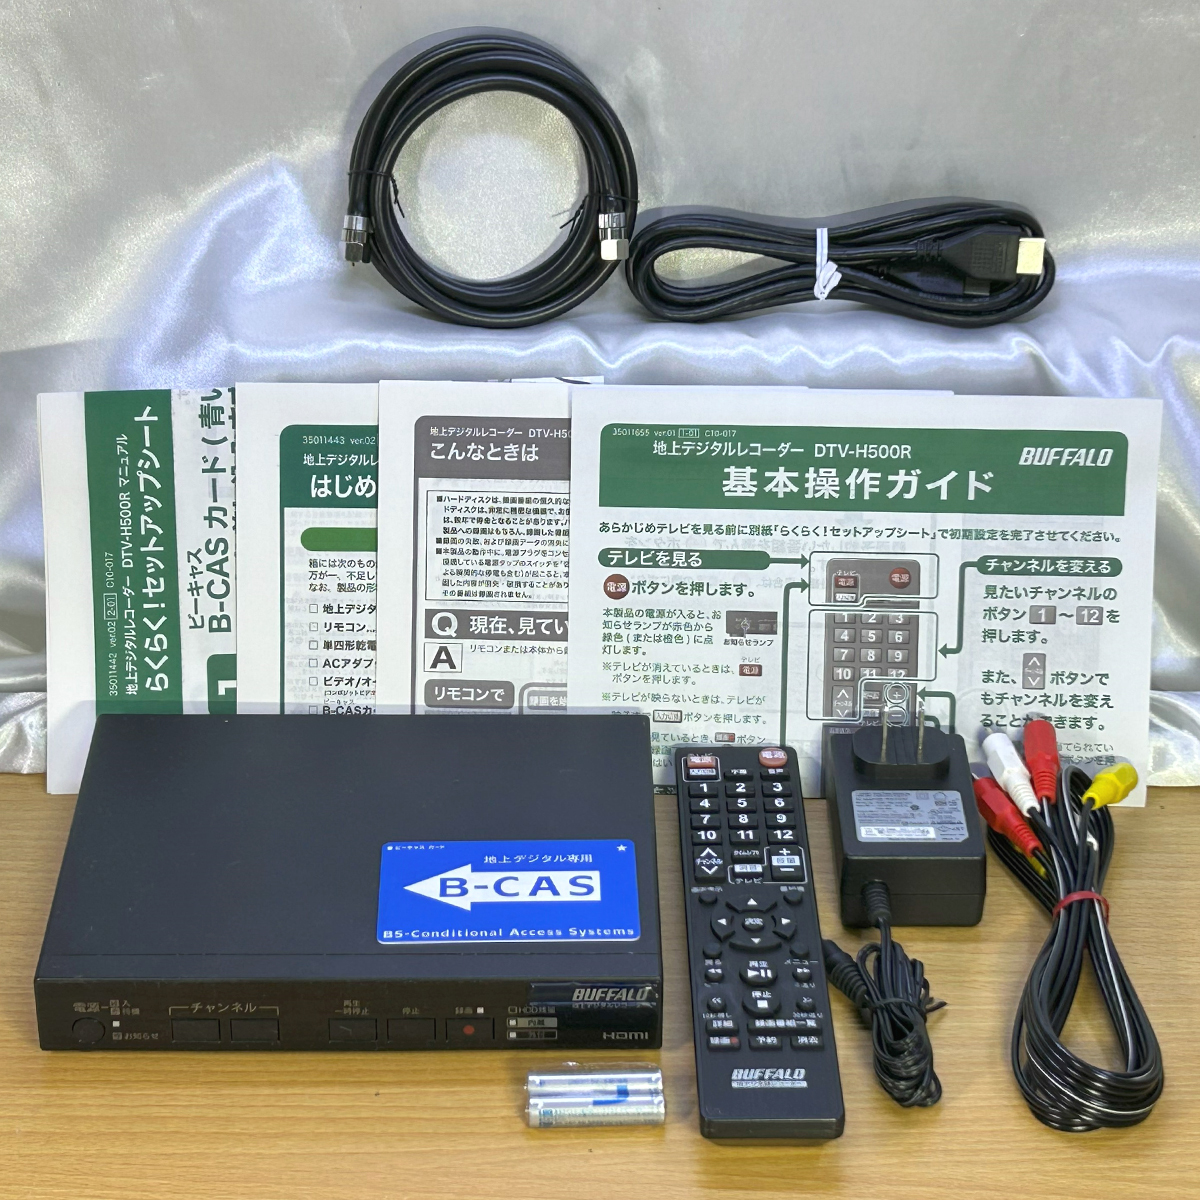 BUFFALO 地デジ対応HDDレコーダー DTV-H500R カスタム メンテナンス済/500GB/熱対策 18